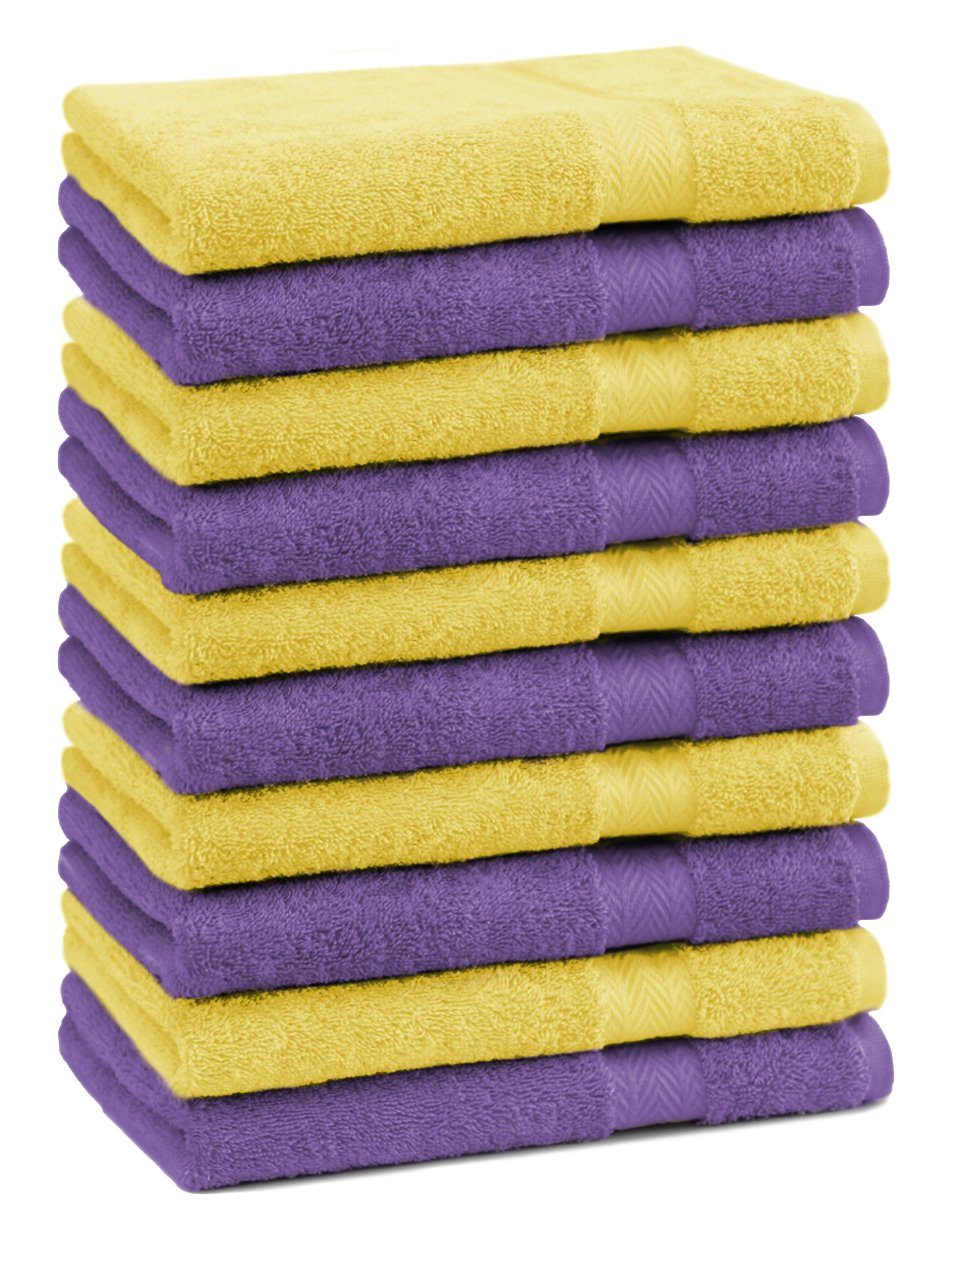 Betz Gästehandtücher 10 Stück Gästehandtücher Premium 100% Baumwolle Gästetuch-Set 30x50 cm Farbe lila und gelb, 100% Baumwolle